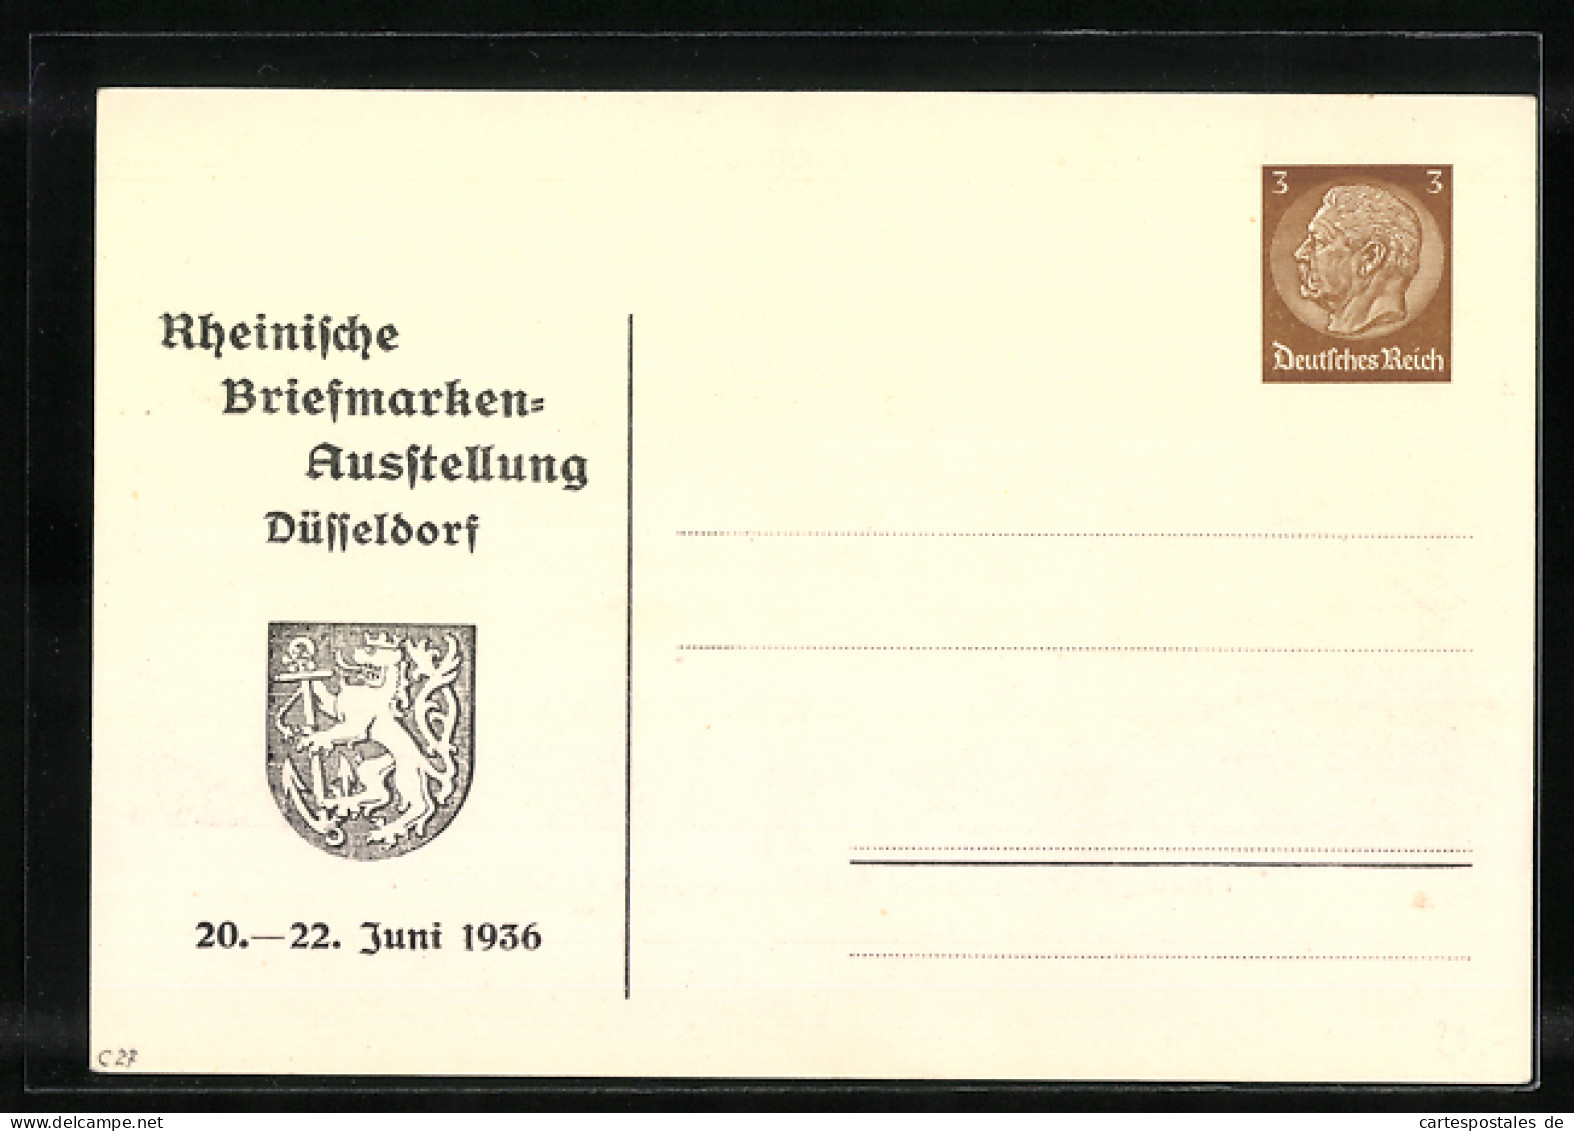 Künstler-AK Düsseldorf, Rheinische Briefmarken-Ausstellung 1936, Zeppelin-Zug, Empfang Der Ausstellungsgäste, Ganzs  - Postcards